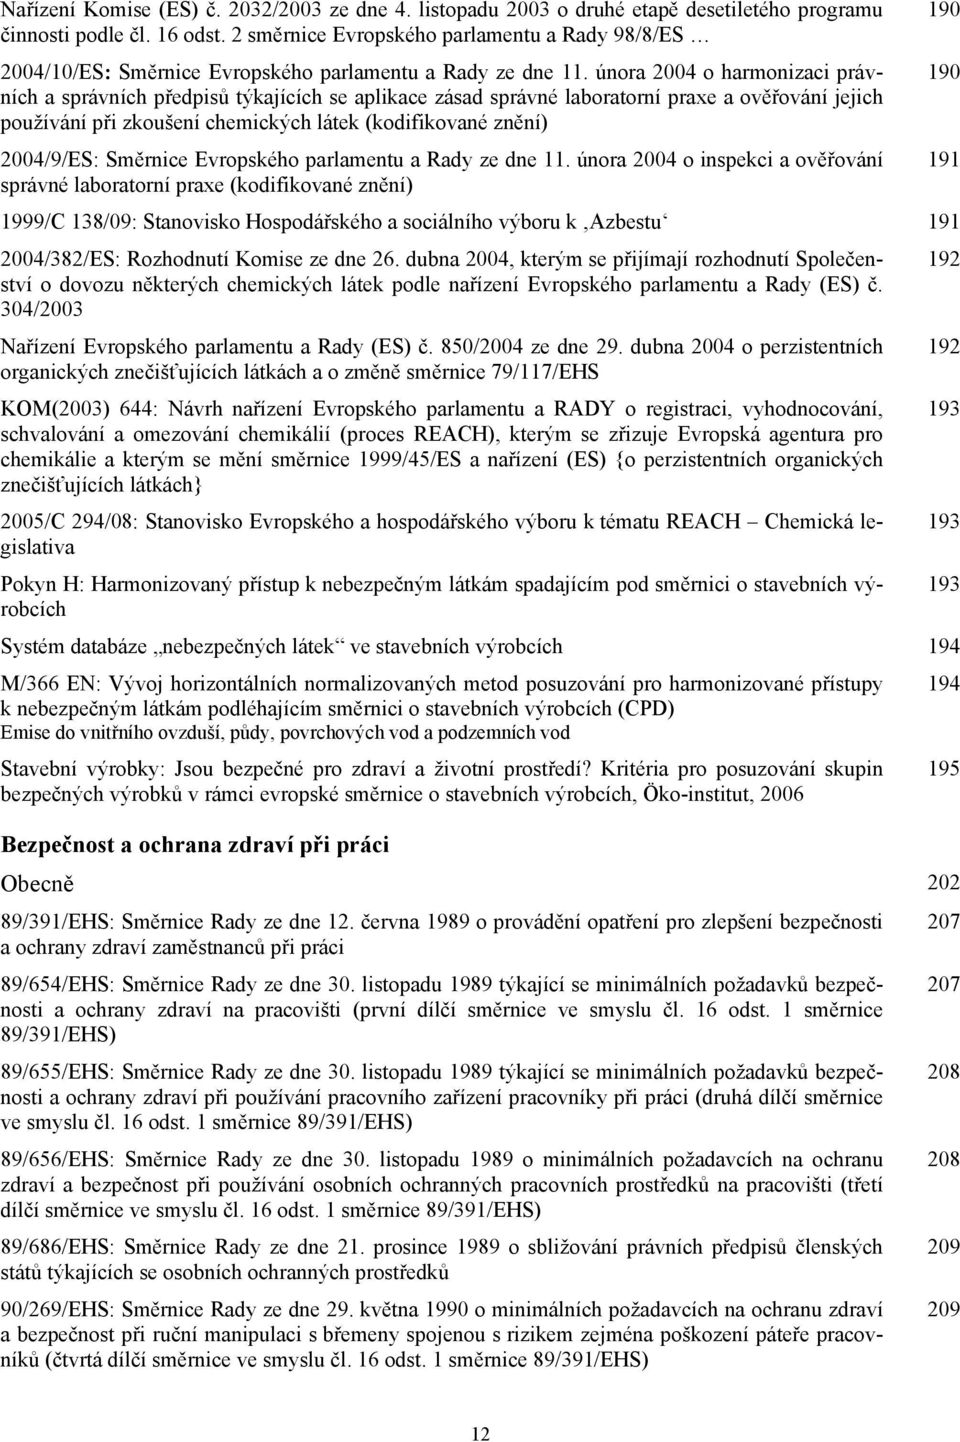 února 2004 o harmonizaci právních a správních předpisů týkajících se aplikace zásad správné laboratorní praxe a ověřování jejich používání při zkoušení chemických látek (kodifikované znění)